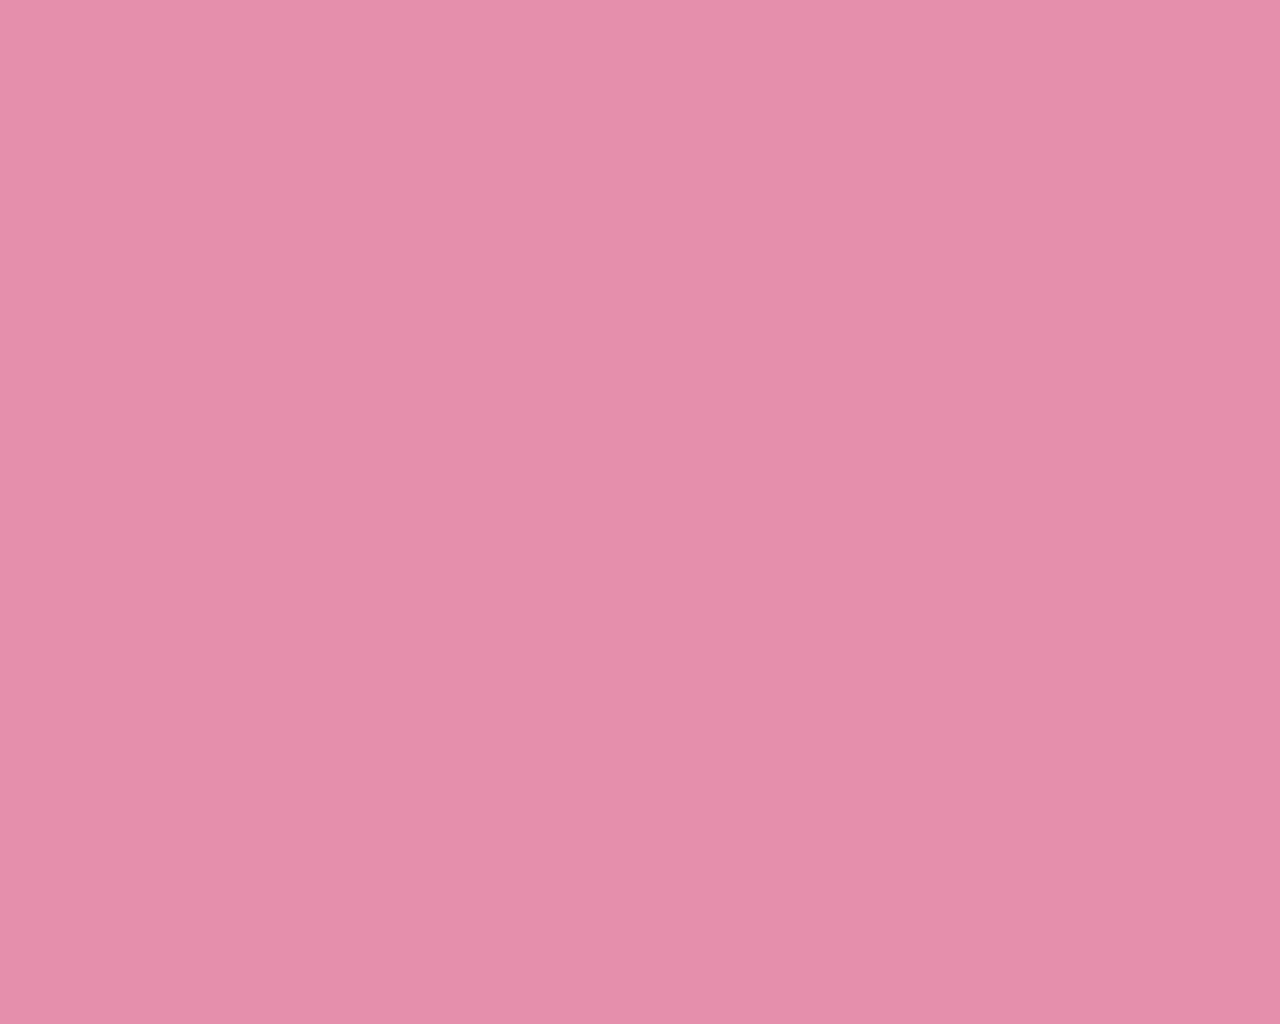 Solid Pink Wallpaper Border Wal